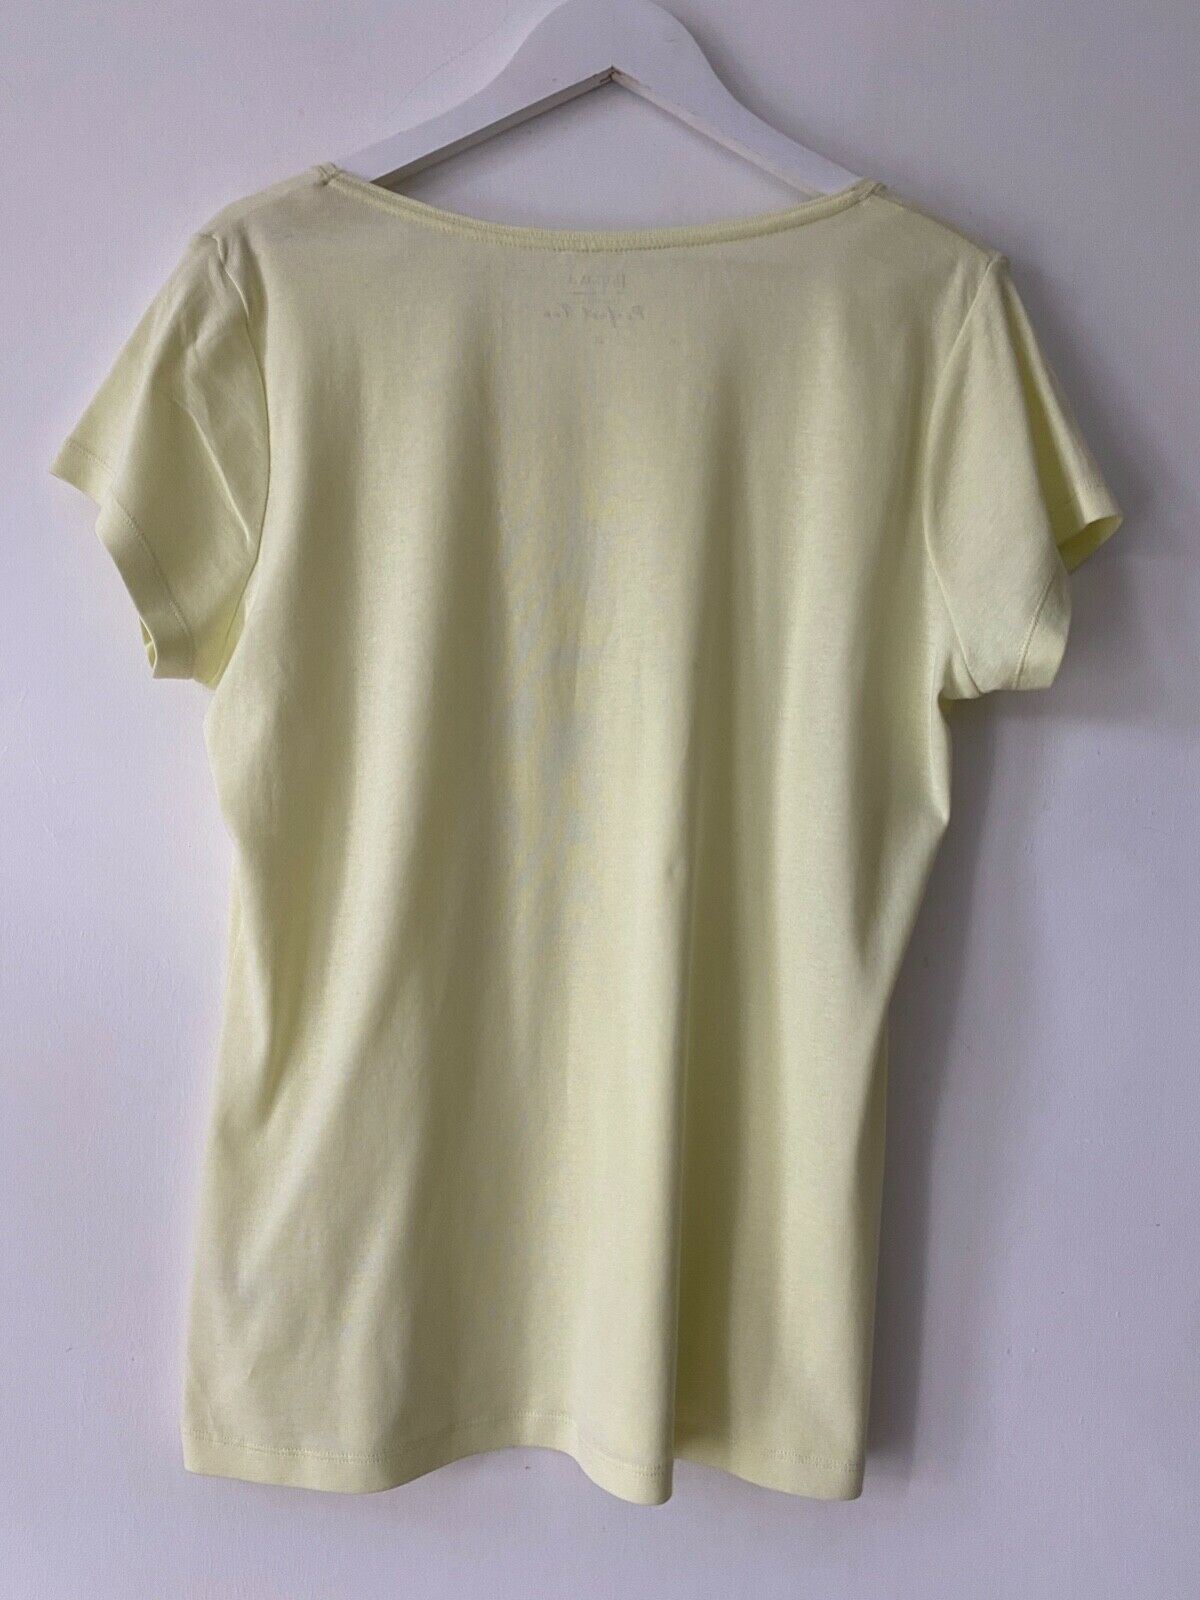 Papaya Yellow T-Shirt Size 20